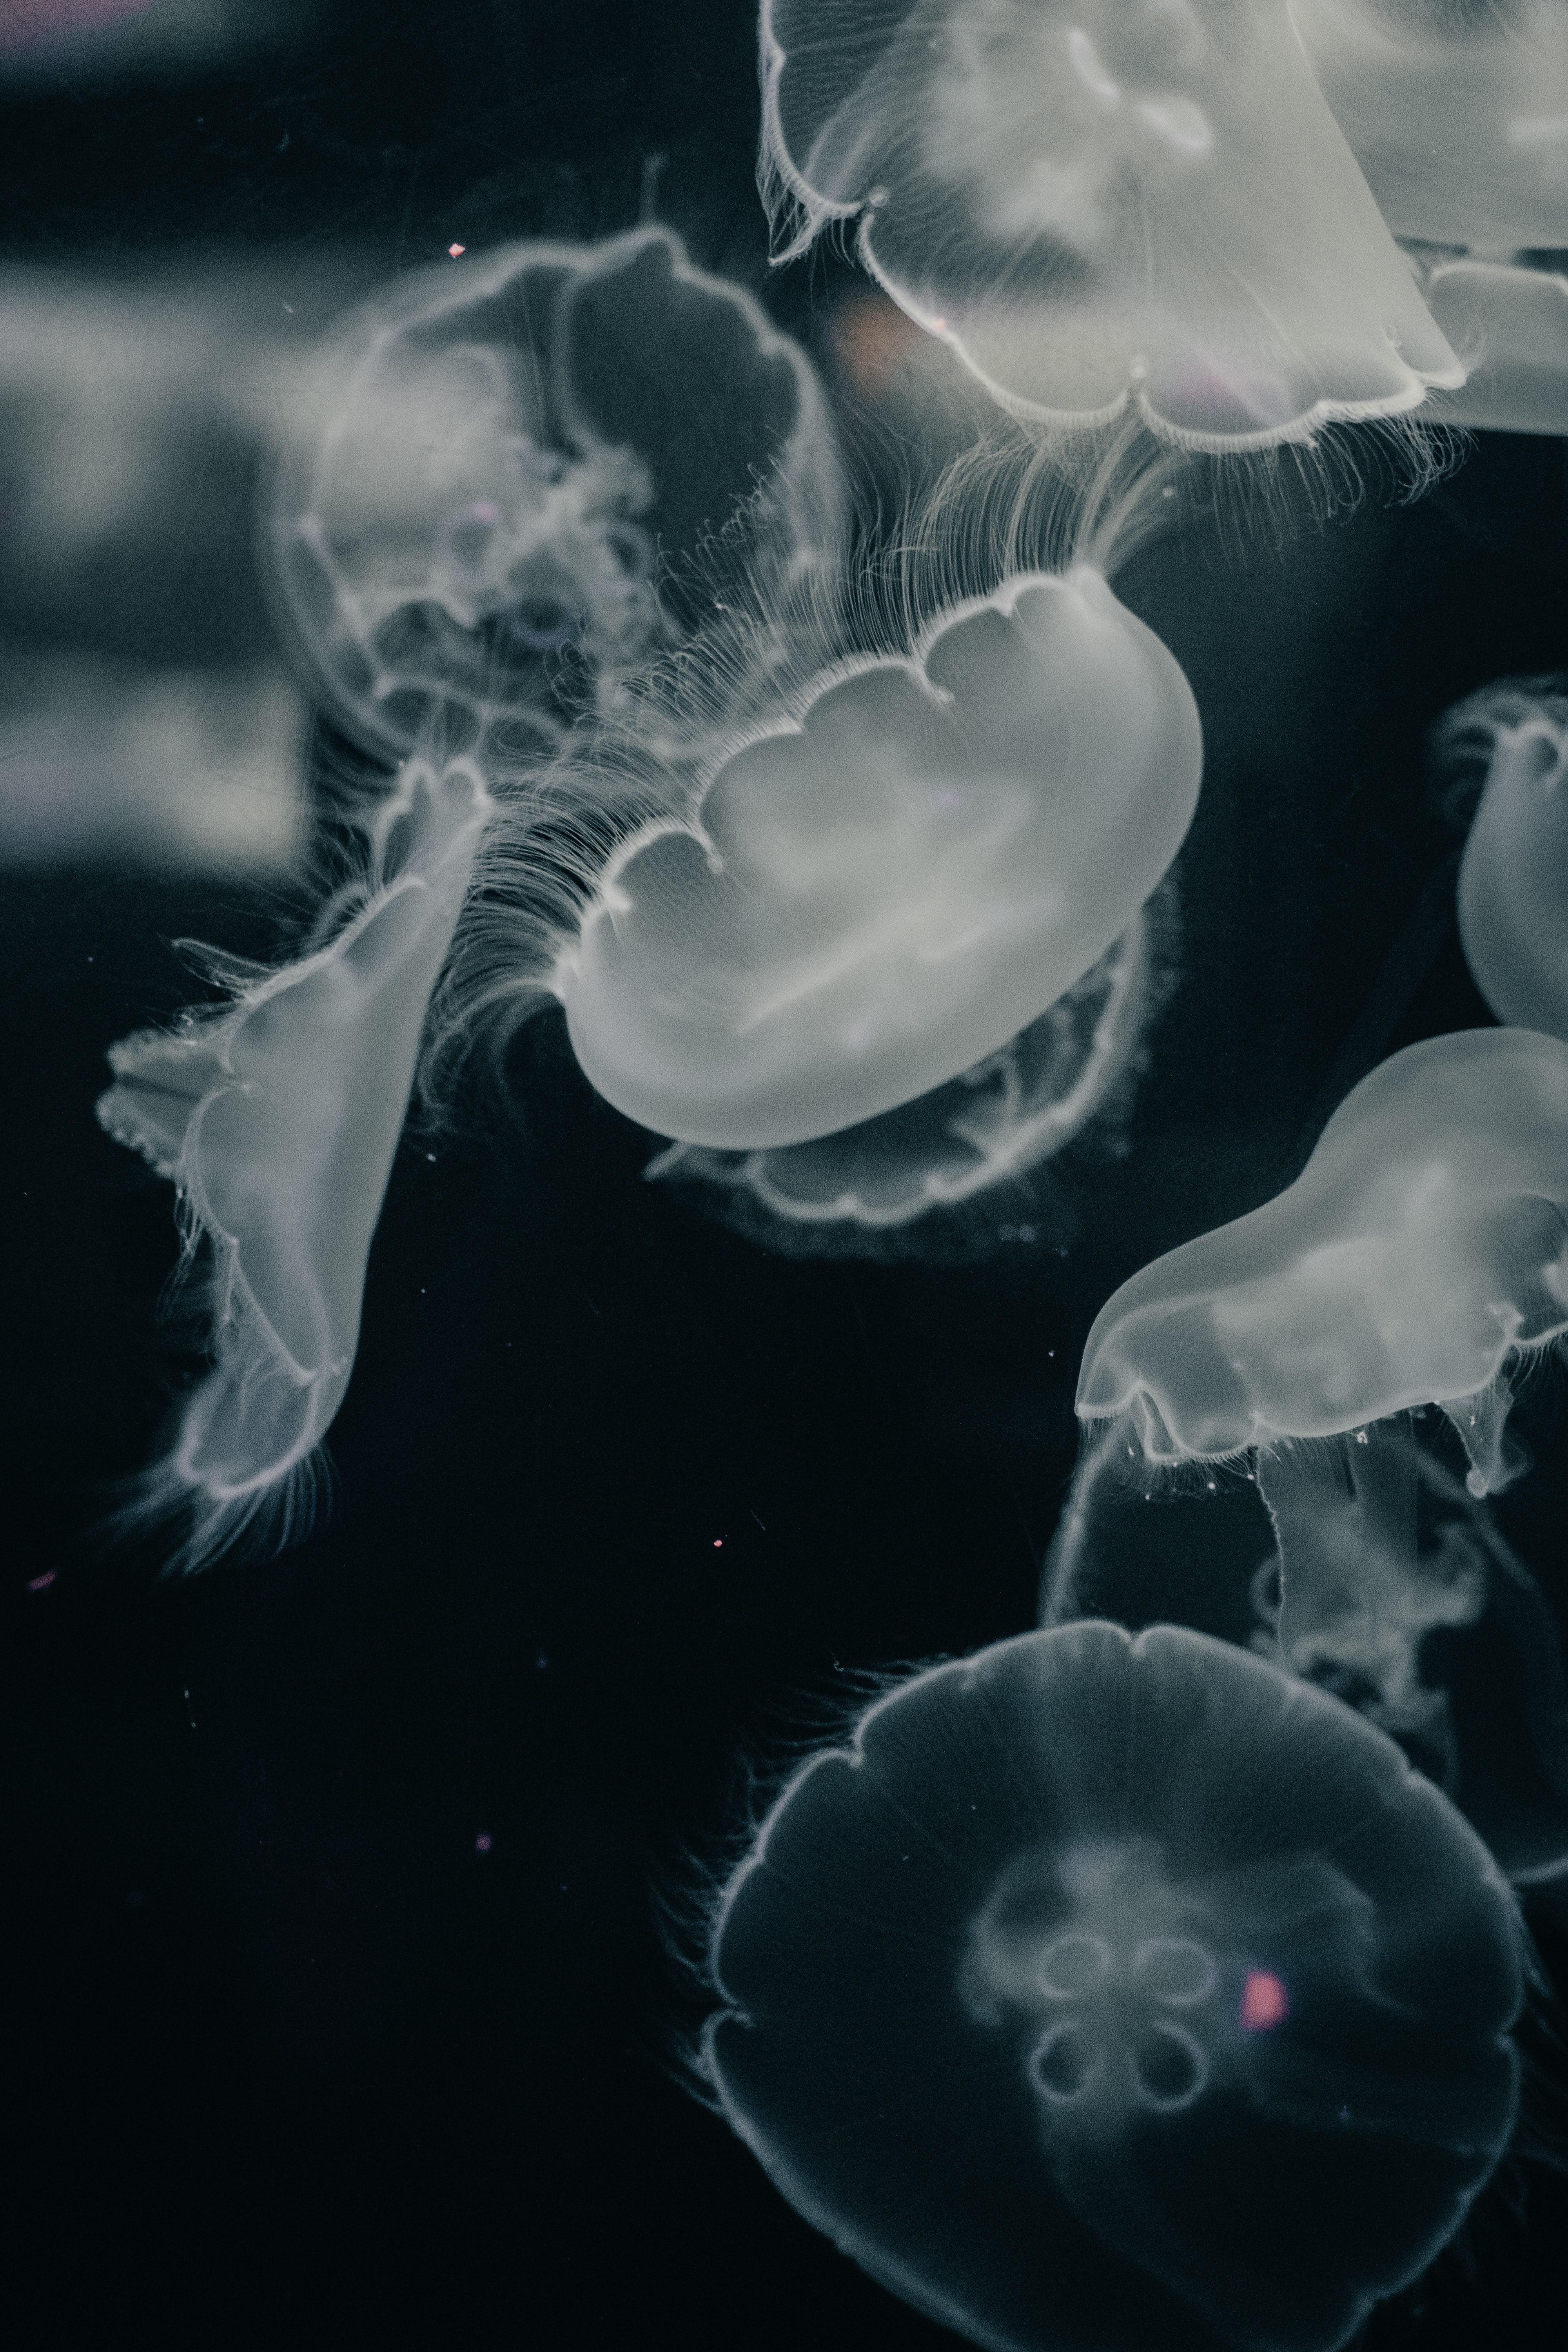 jellyfish, creatures, animals, water, grey, under water, underwater